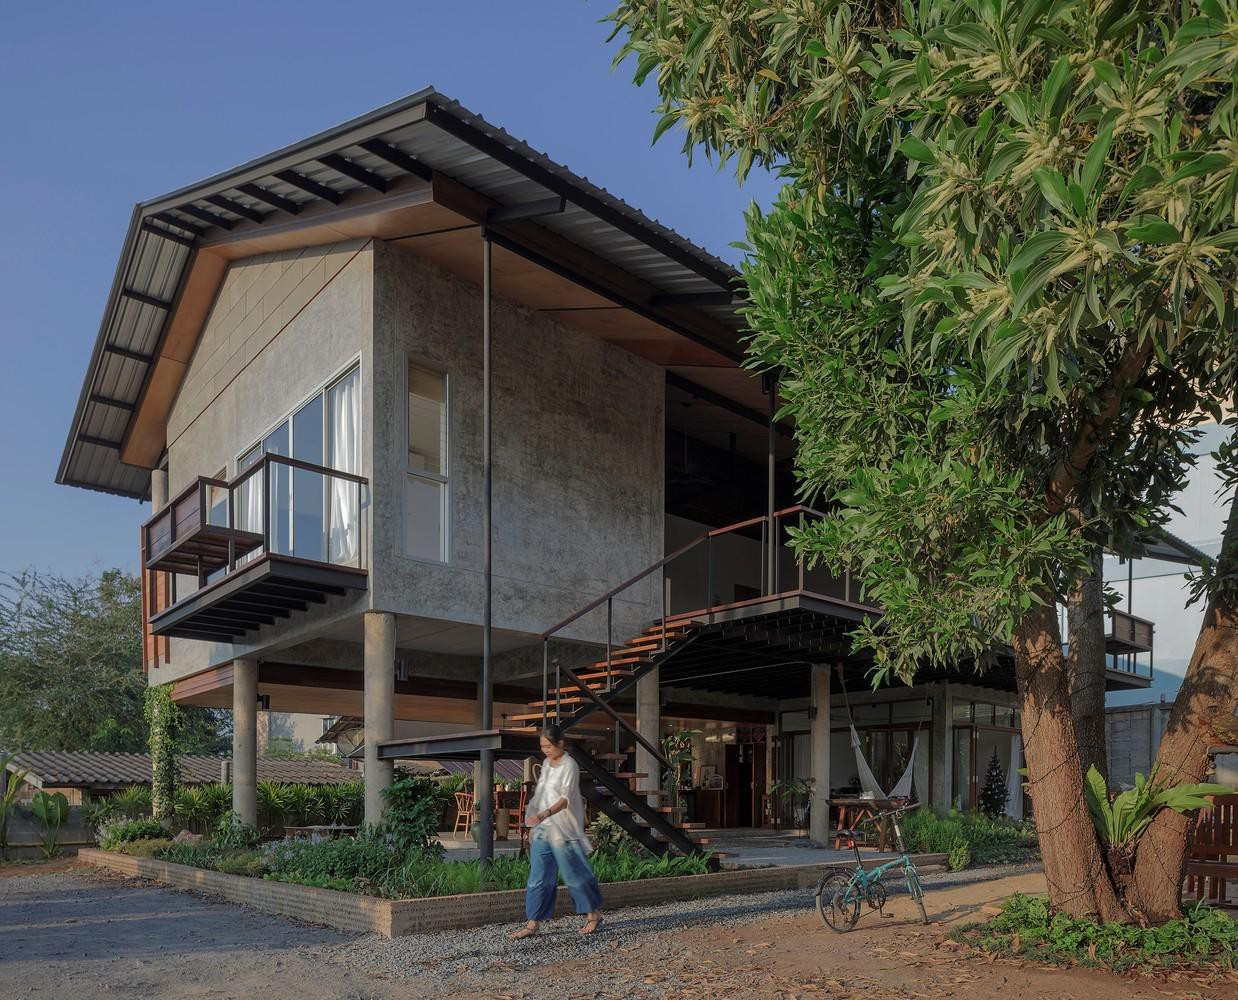 Nhà sàn hiện đại mái tôn Thái Lan: Khám phá những căn nhà sàn hiện đại với mái tôn độc đáo, tinh tế của Thái Lan. Với thiết kế đơn giản, sáng tạo, những căn nhà này đem lại cho bạn sự tiện nghi, hiện đại nhưng cũng không kém phần gần gũi với thiên nhiên và bản sắc văn hóa của vùng đất Đông Nam Á.